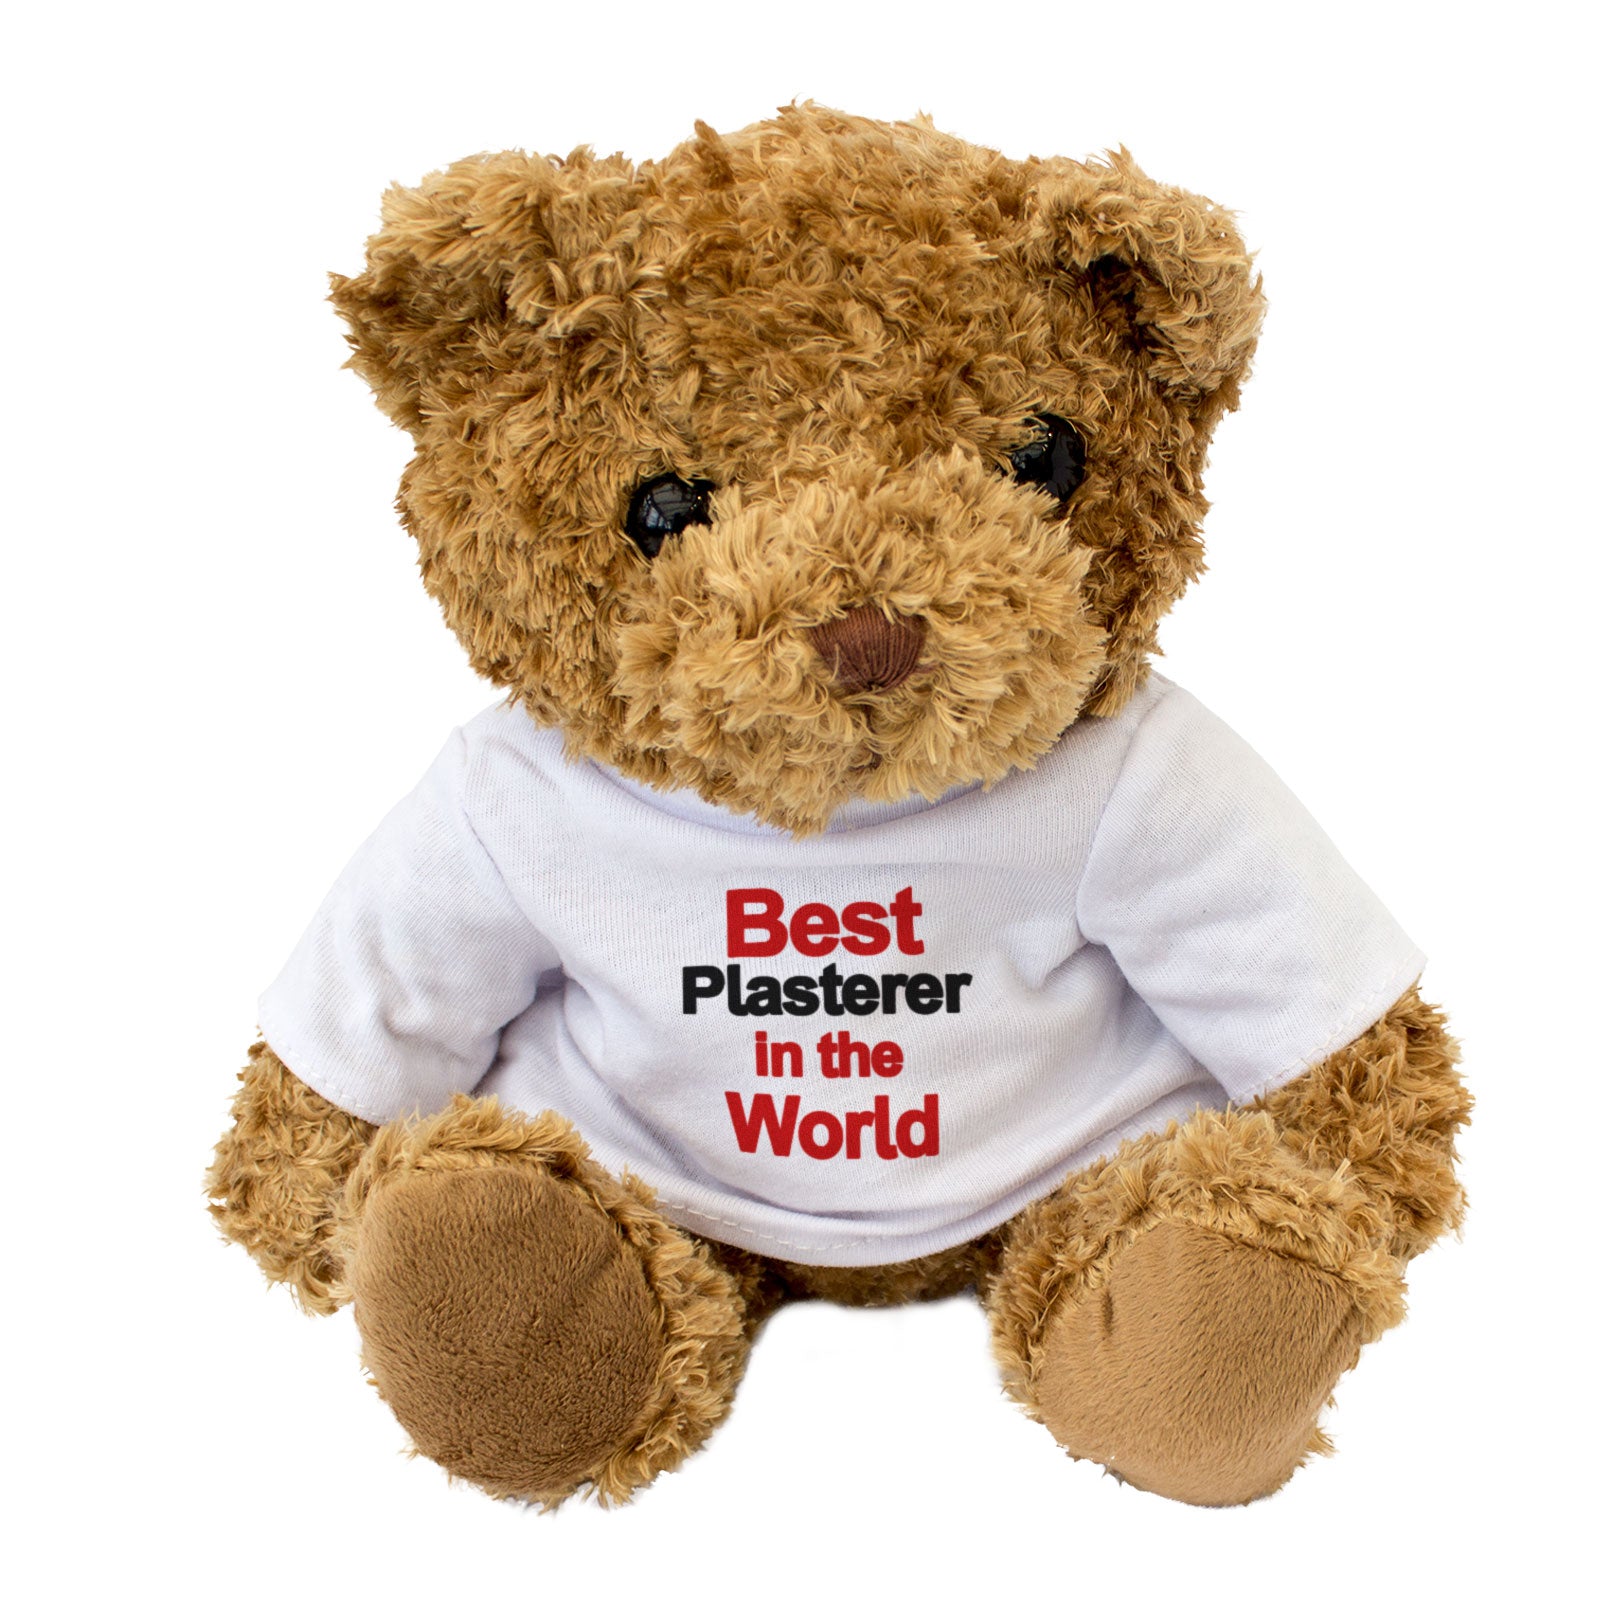 Best Plasterer In The World Teddy Bear